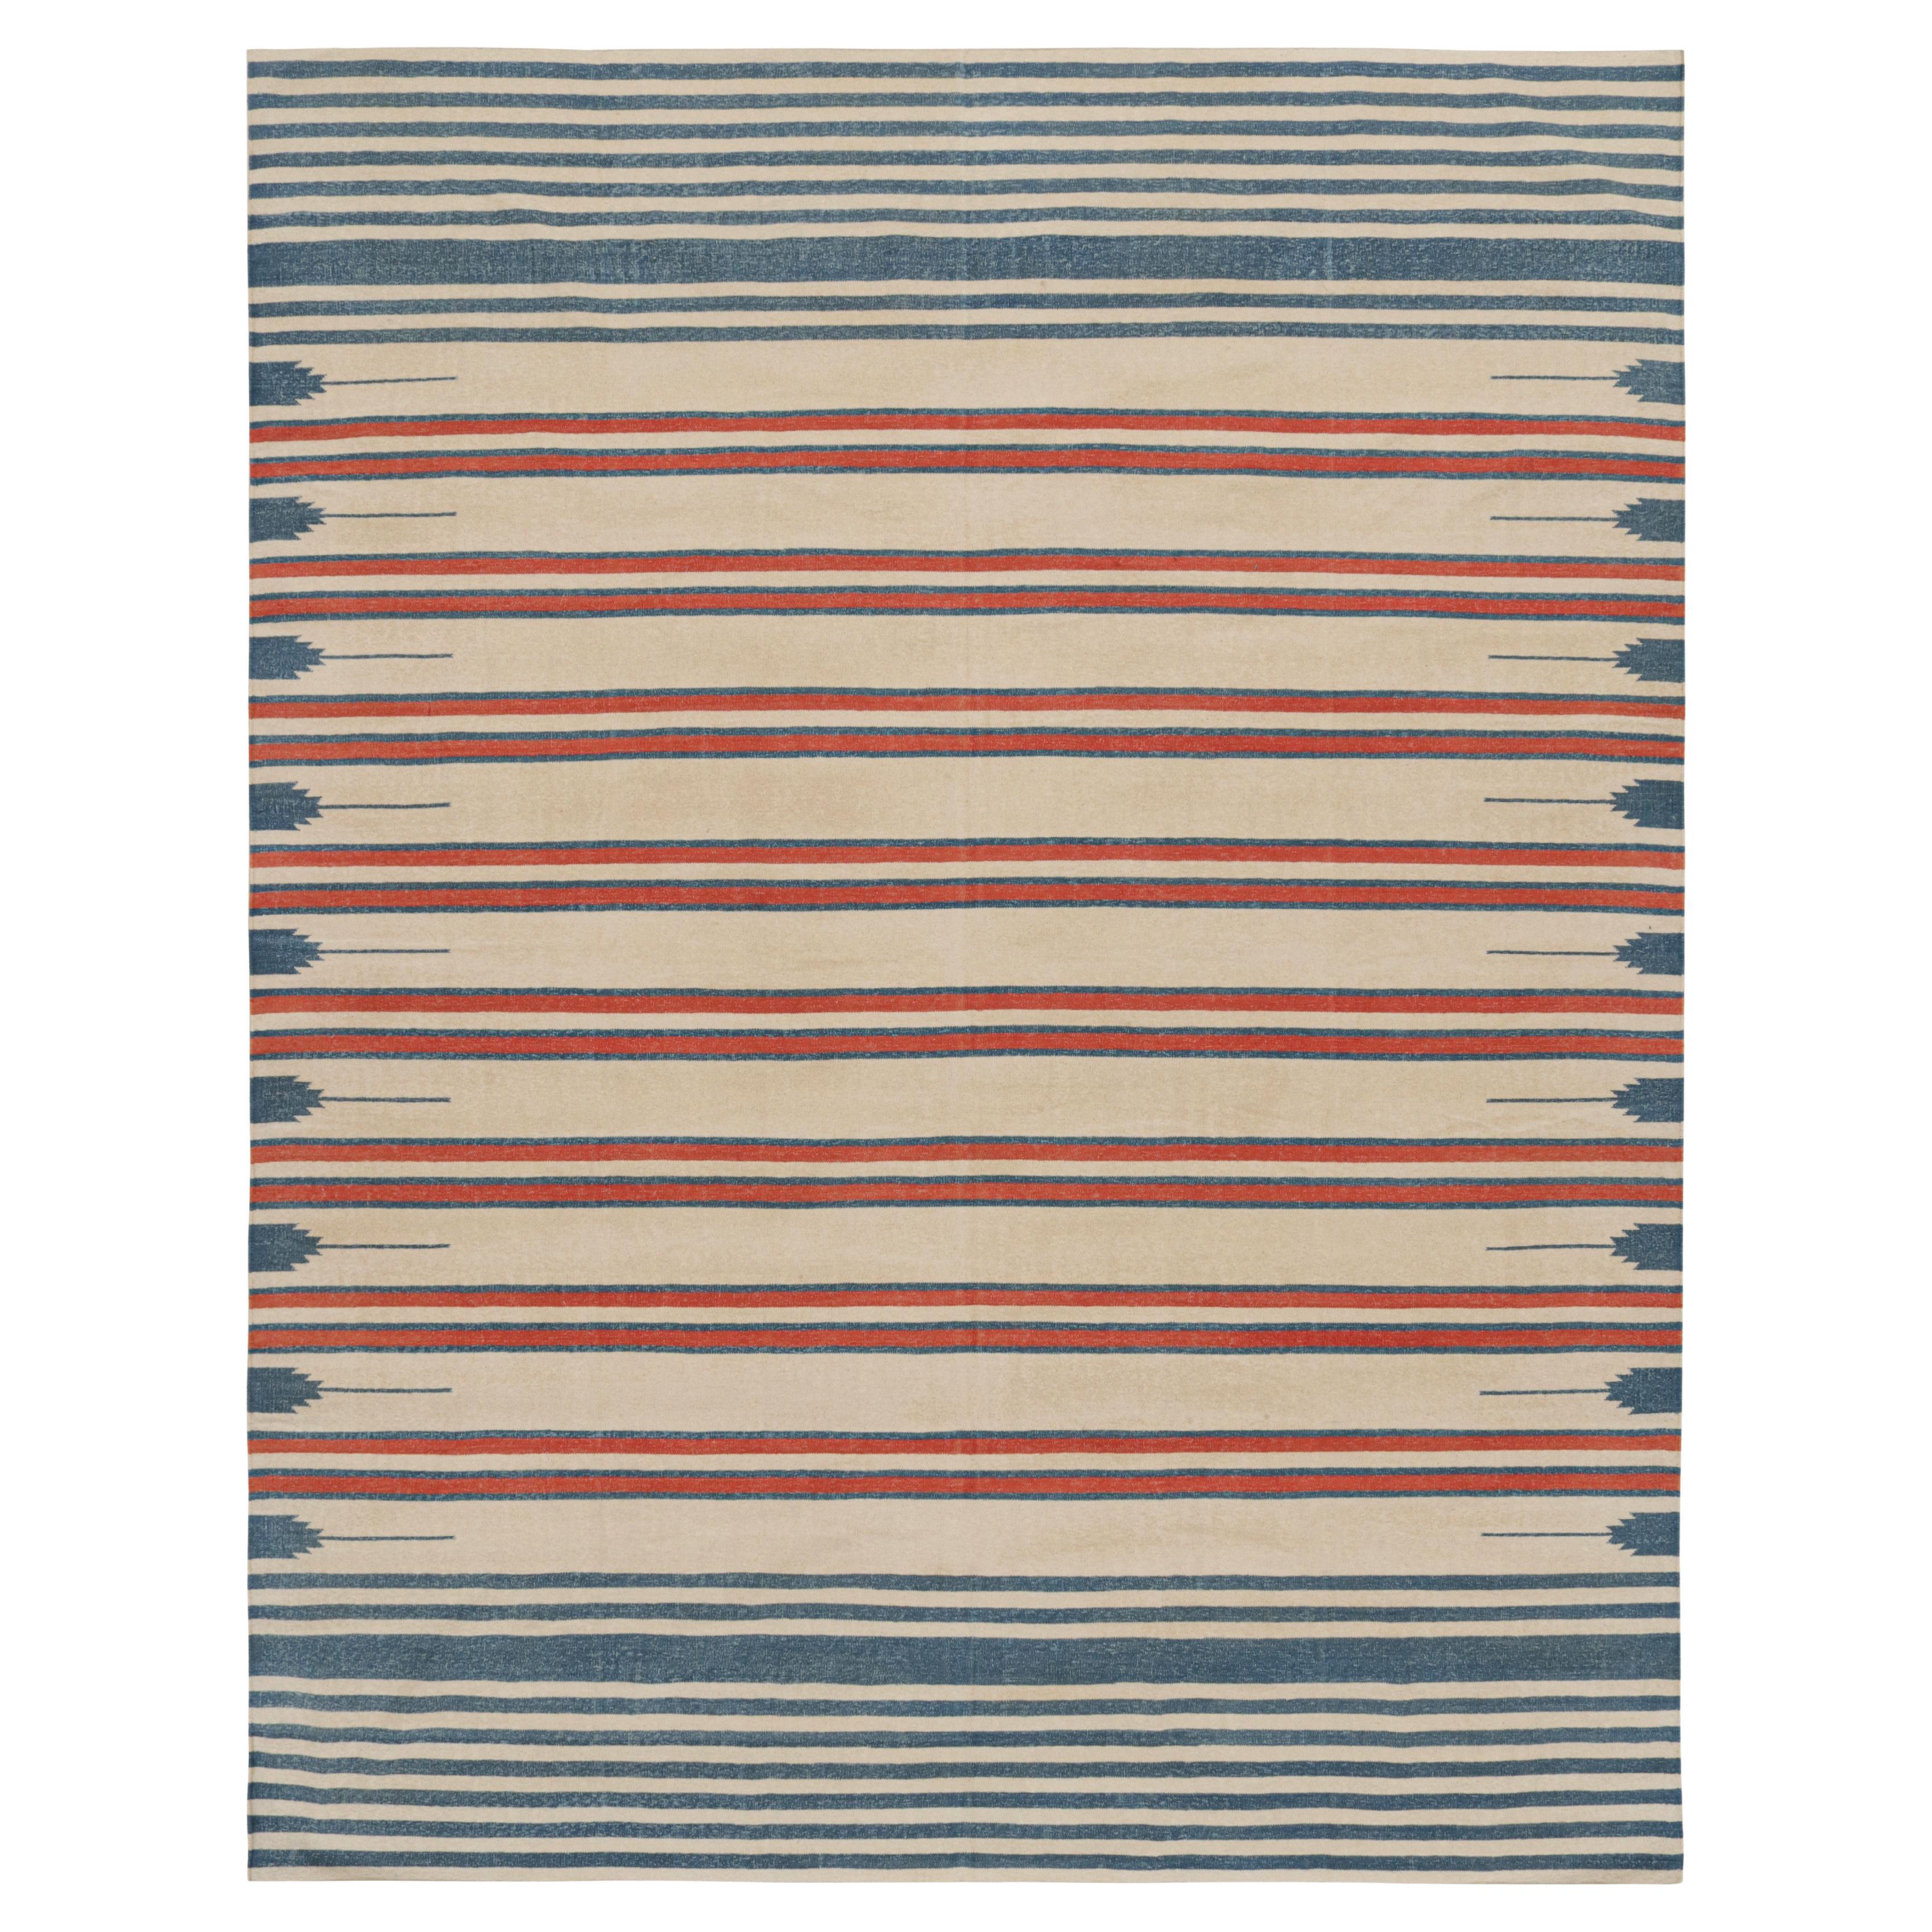 Rug & Kilim's Contemporary Dhurrie Rug with Beige, Red, Blue Stripes Red Accents (tapis contemporain en dhurrie avec des rayures beiges, rouges et bleues et des accents rouges)